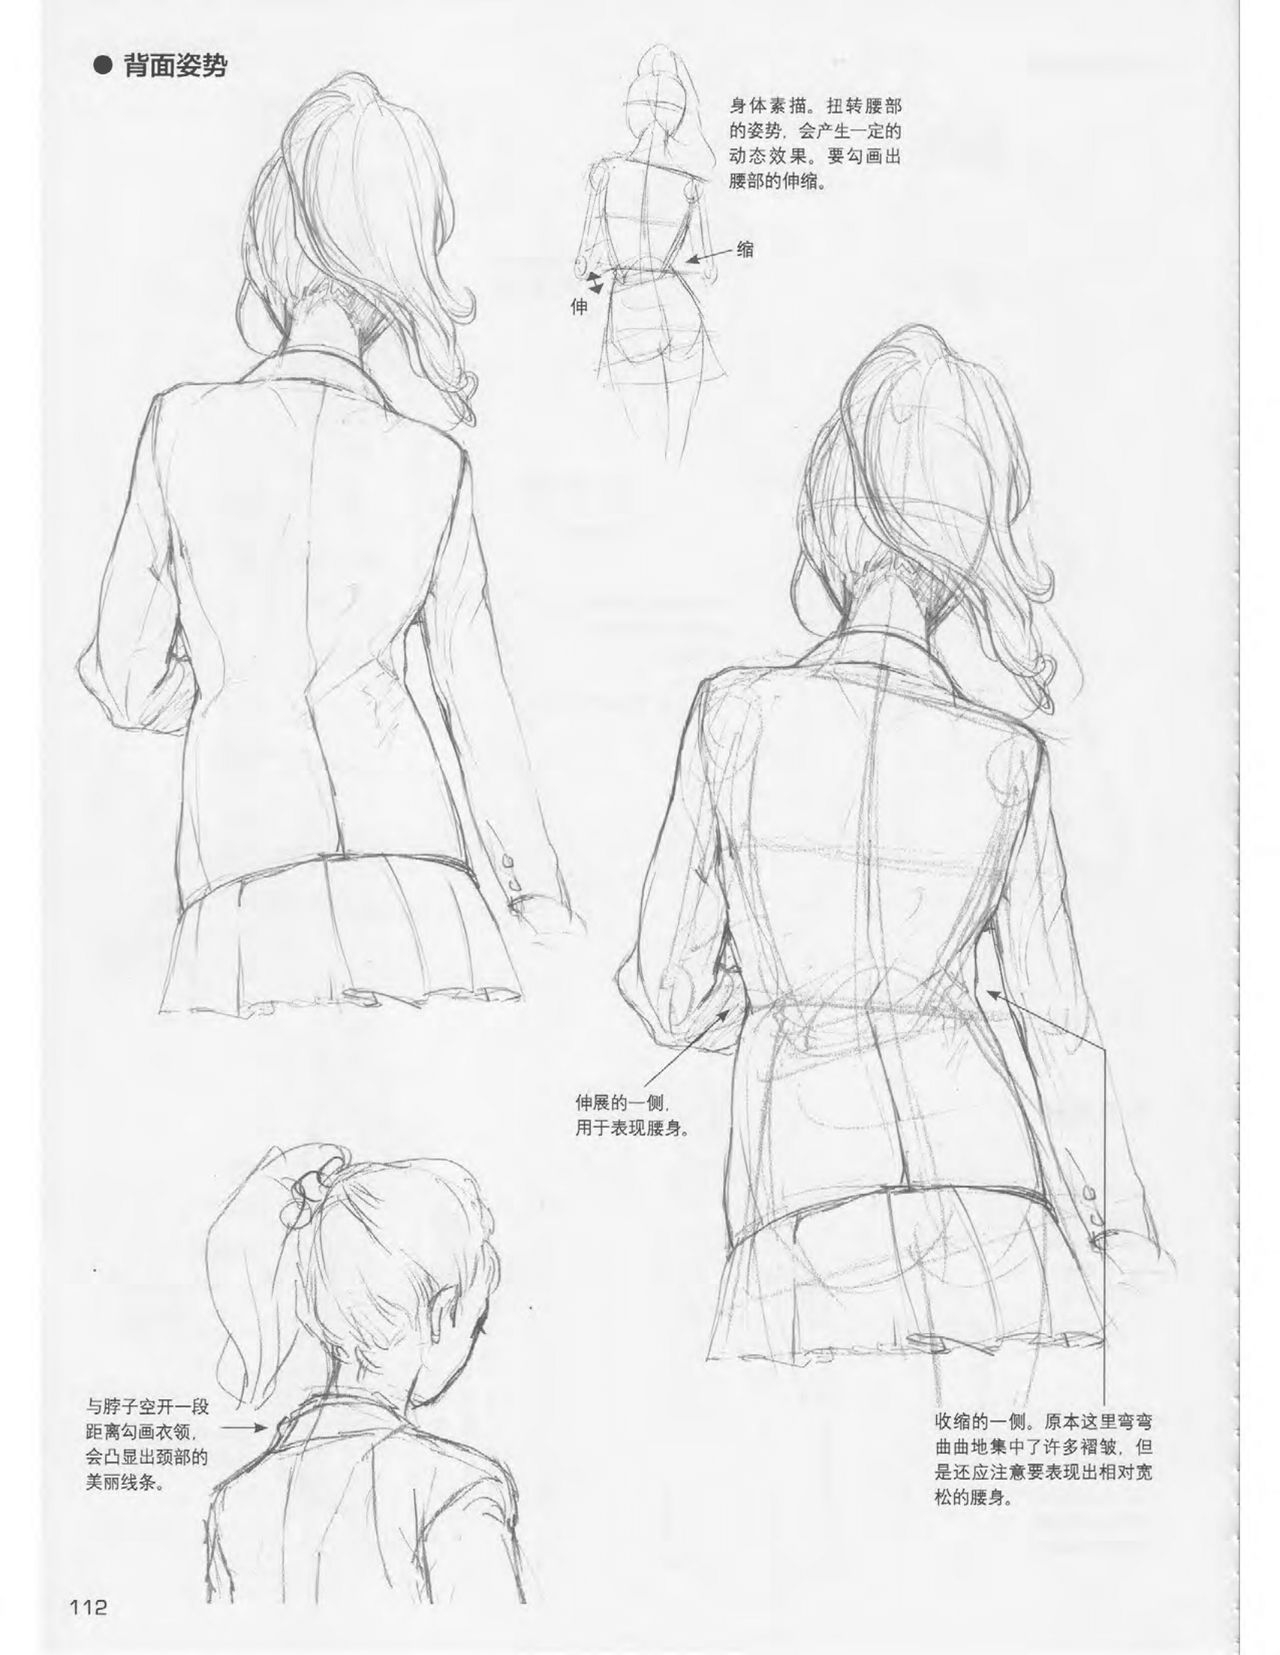 Japanese Manga Master Lecture 3: Lin Akira and Kakumaru Maru Talk About Glamorous Character Modeling 112